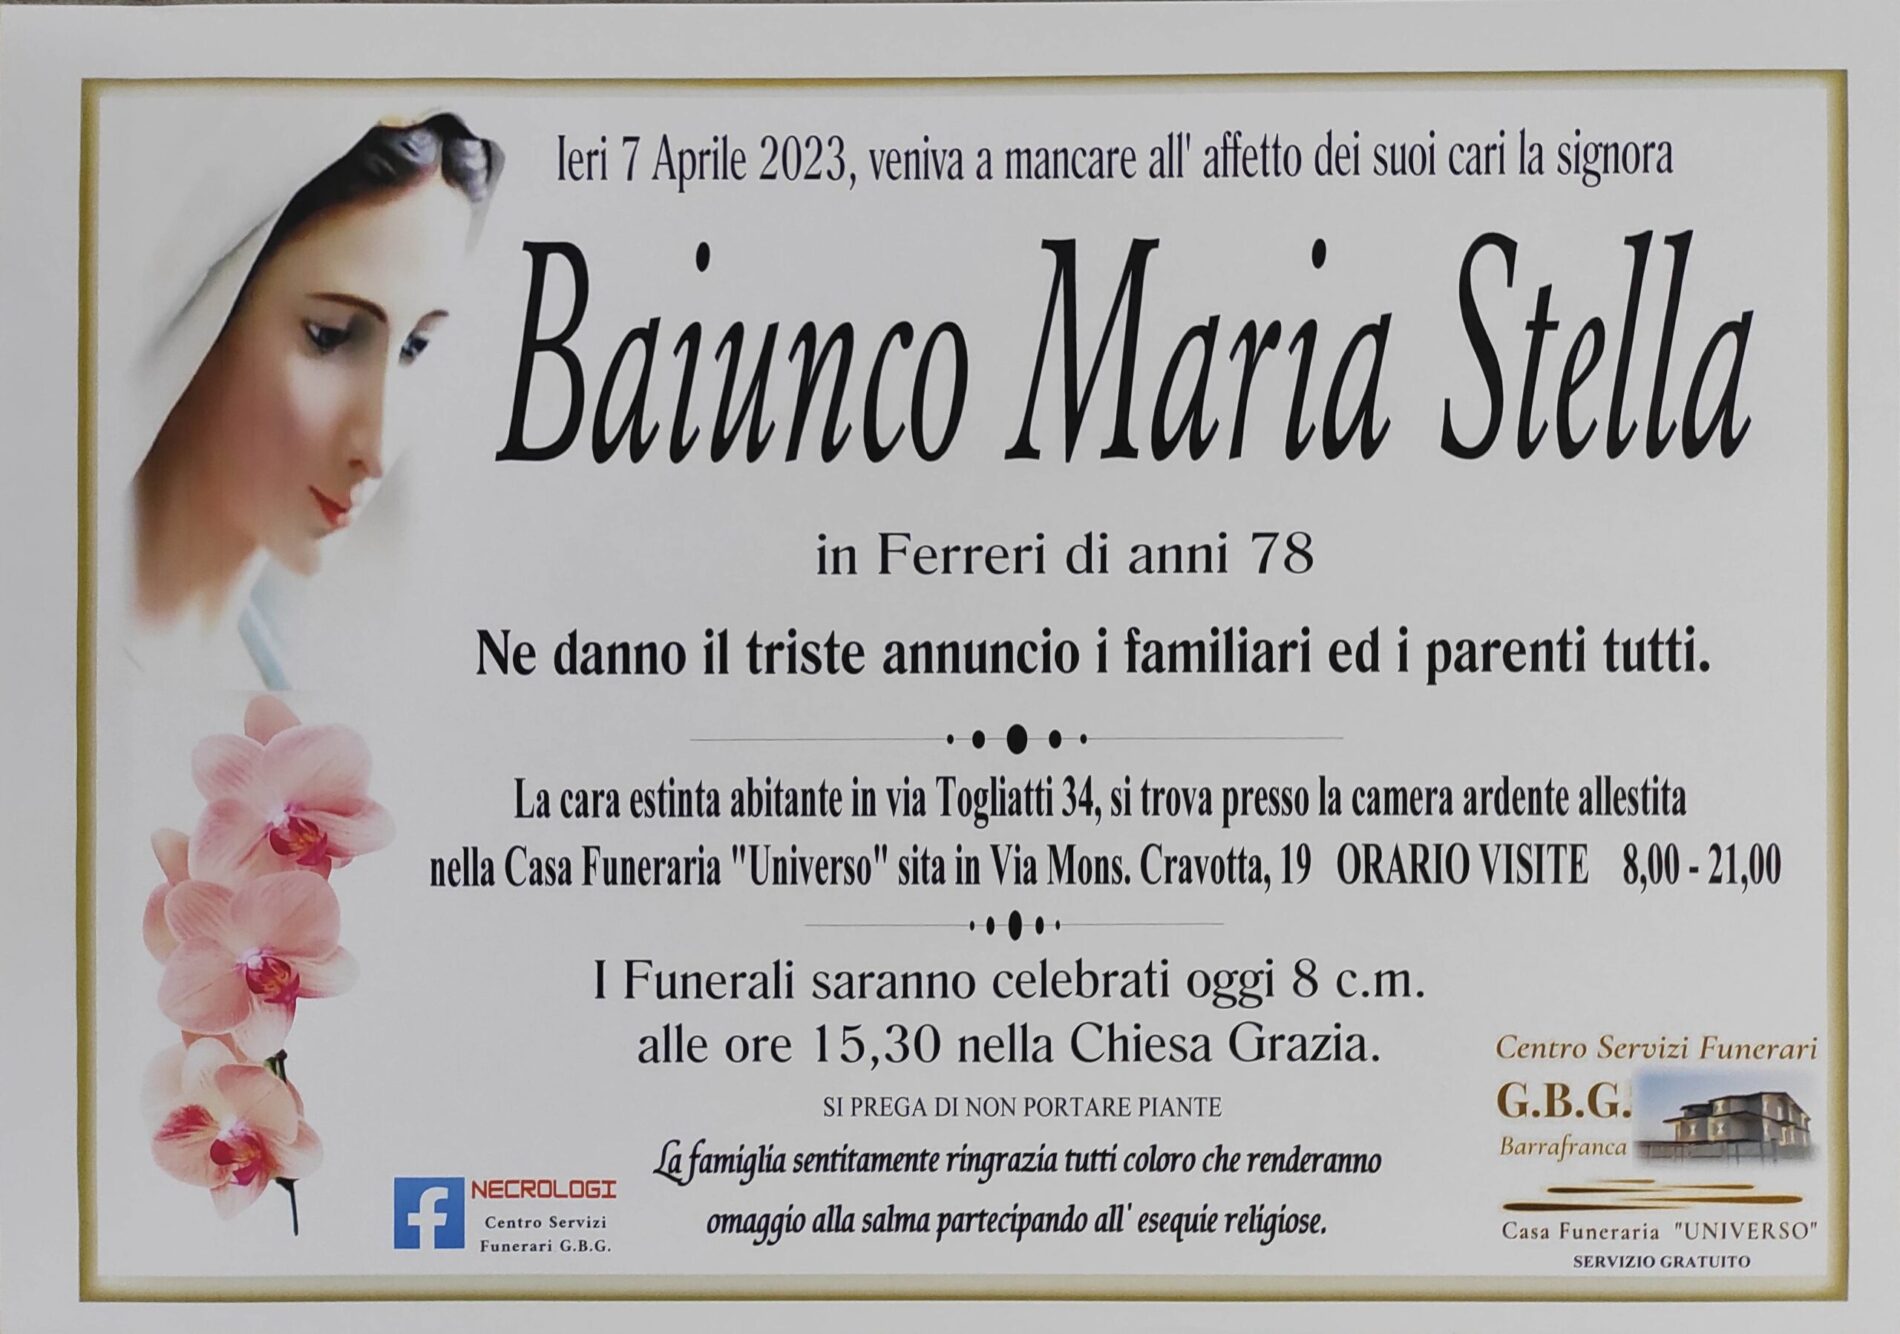 Annuncio servizi funerari agenzia G.B.G. signora Baiunco Maria Stella in Ferreri di anni 78